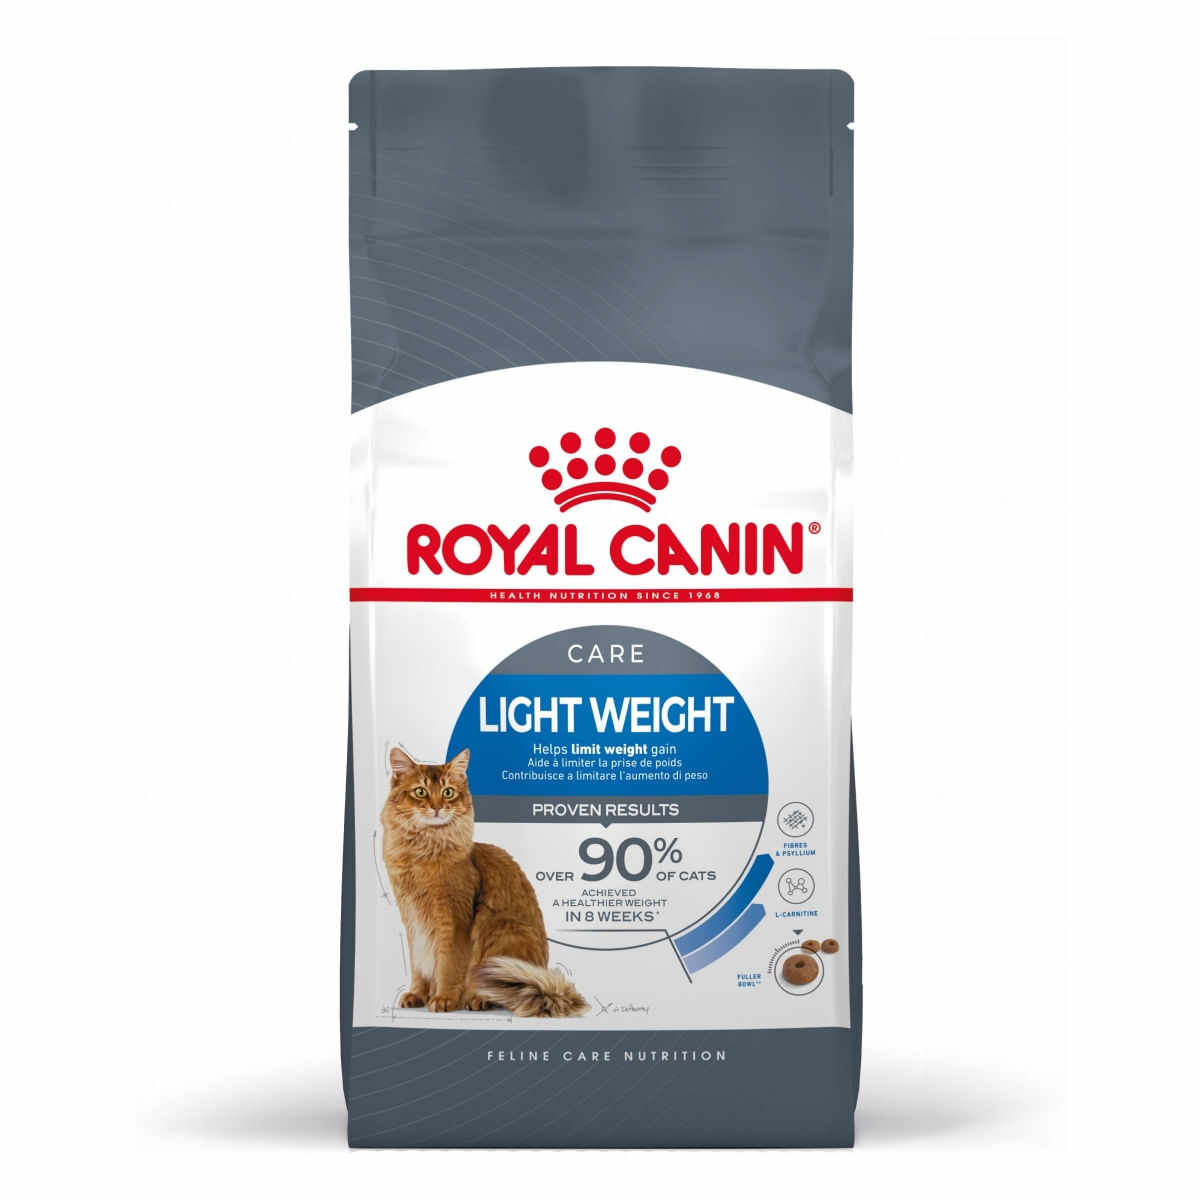 Royal Canin Light Weight Care Adult, hrană uscată pisici, managementul greutății ROYAL CANIN Feline Care Nutrition Light Weight Care, hrană uscată pisici, managementul greutății, 1.5kg